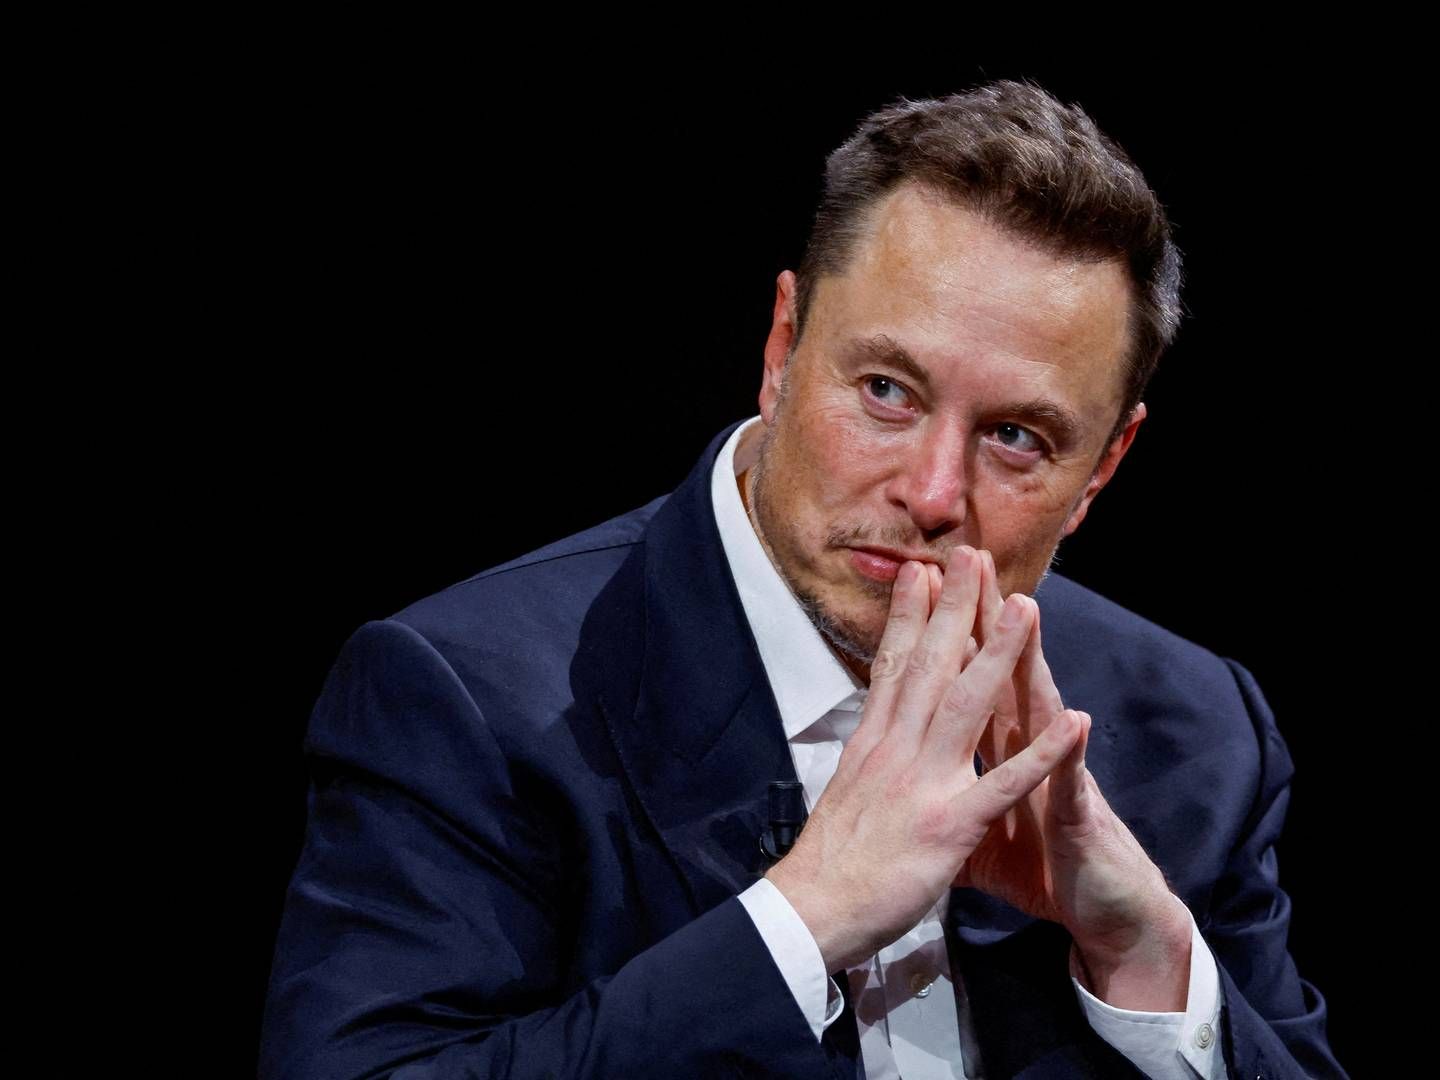 En ny bog beskriver blandt andet, hvordan X-ejer Elon Musk tilsyneladende blander sig i krigen i Ukraine. | Foto: Gonzalo Fuentes